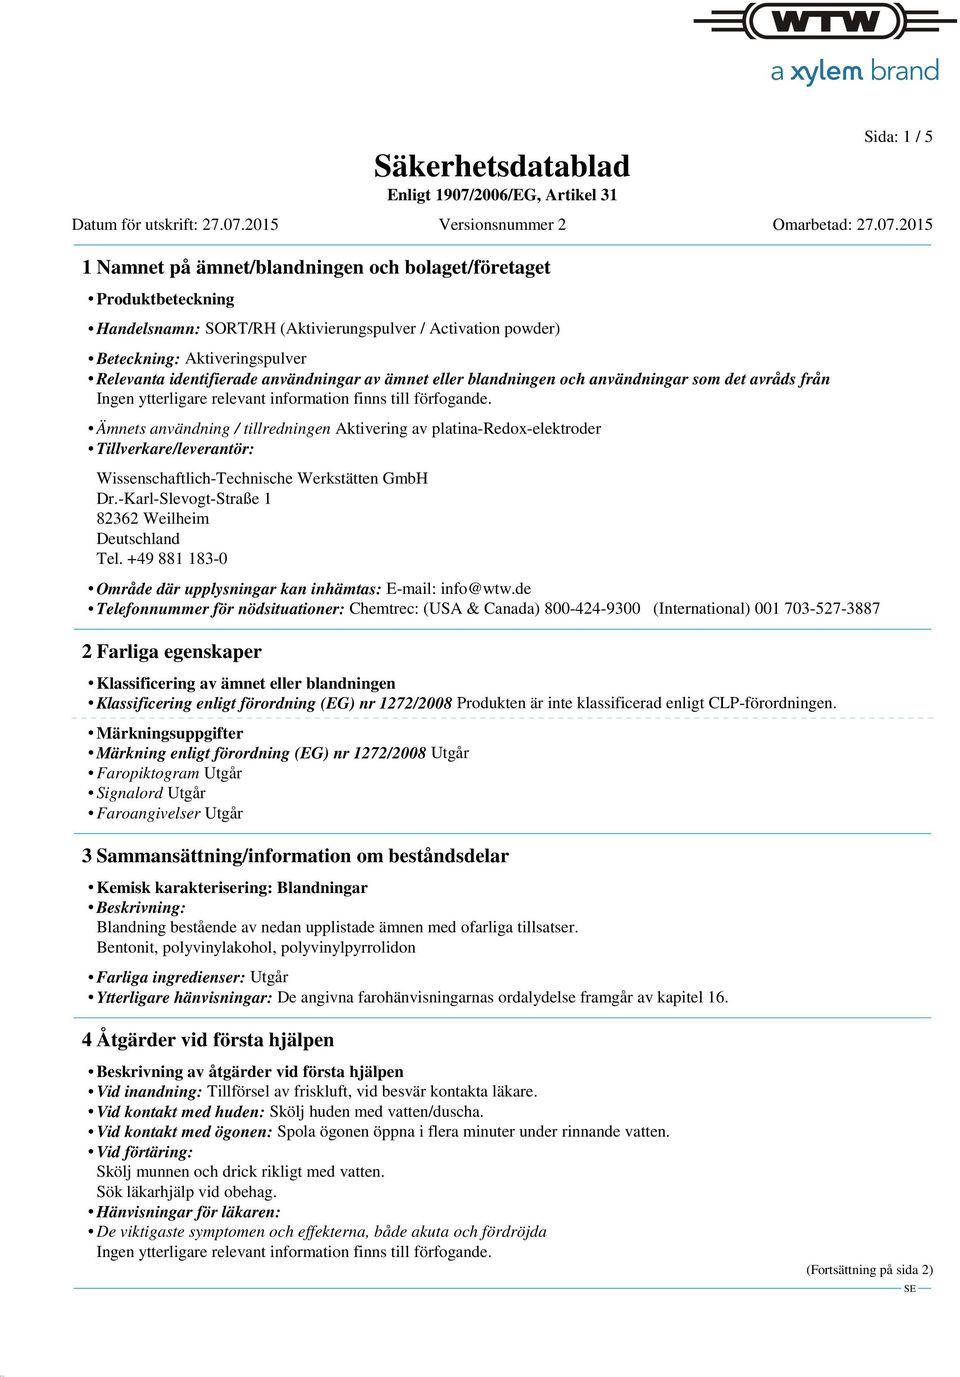 Wissenschaftlich-Technische Werkstätten GmbH Dr.-Karl-Slevogt-Straße 1 82362 Weilheim Deutschland Tel. +49 881 183-0 Område där upplysningar kan inhämtas: E-mail: info@wtw.